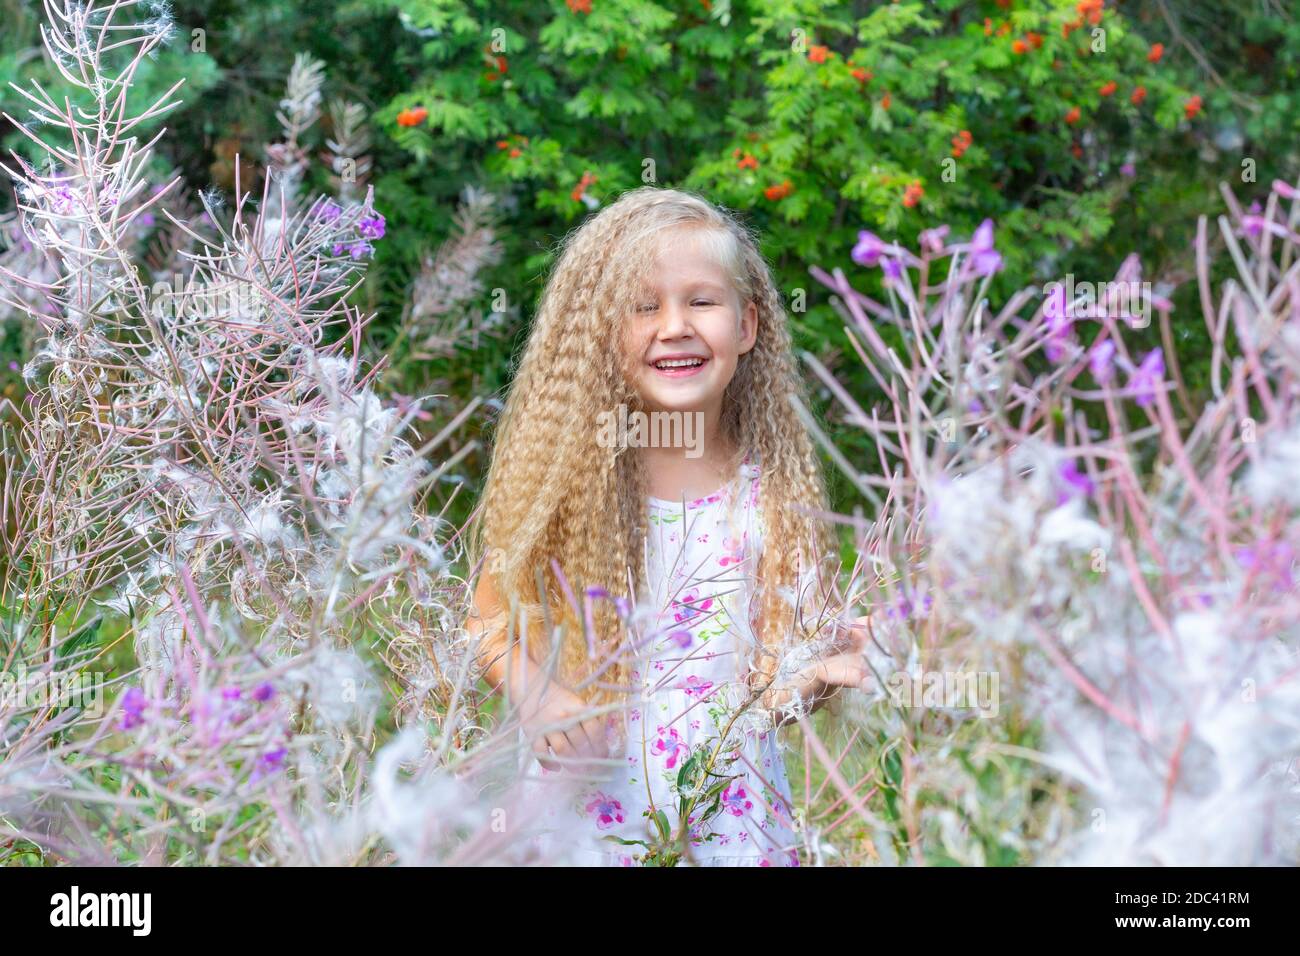 Une petite fille blonde de 5-6 ans dans une sundress blanche est entourée par Sally en fleur, la mauvaise herbe à feu. Cheveux longs blonds bouclés, coiffure. Été, na Banque D'Images